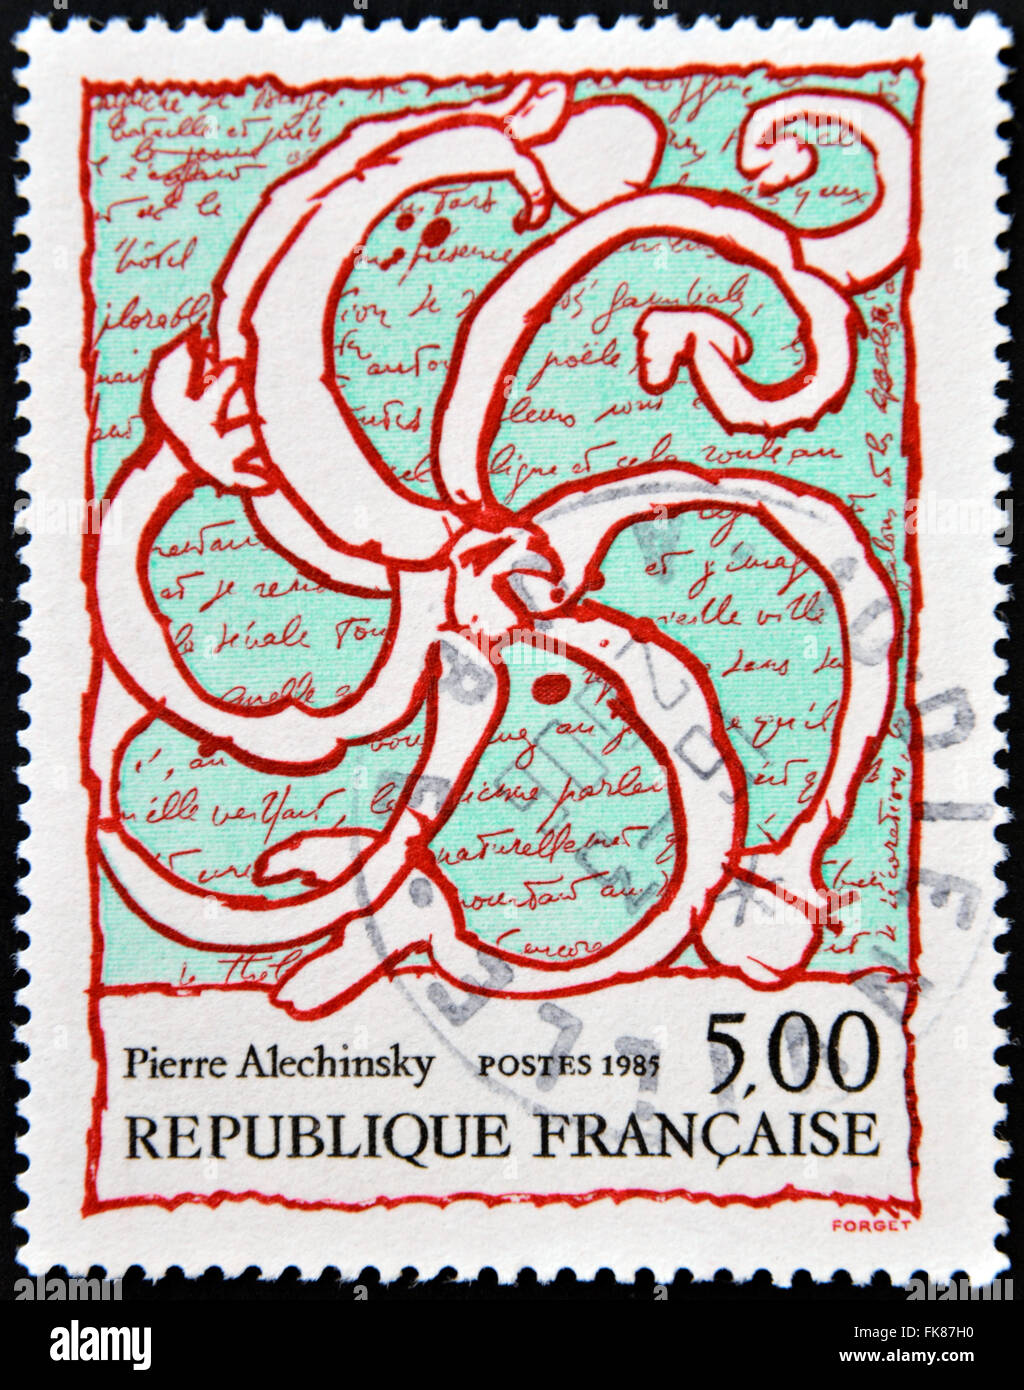 FRANCE - circa 1985 : timbre imprimé en France montre Octopus superposées sur manuscrit, peinture de Pierre Alechinsky, vers 1985 Banque D'Images